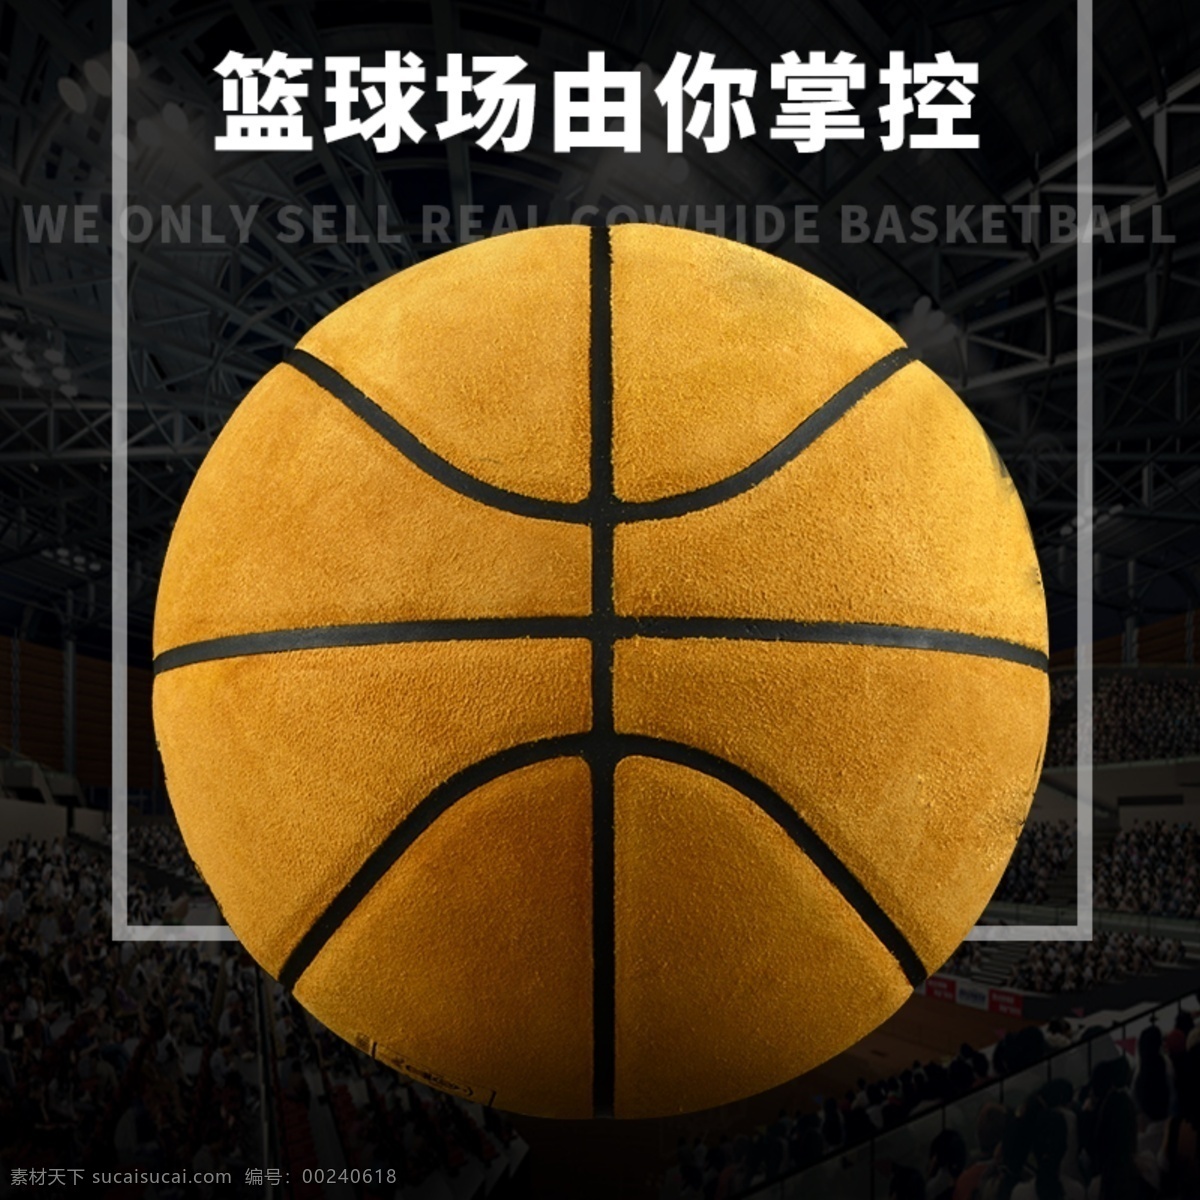 篮球 直通车 钻 展 淘宝 主 图 钻展 海报 篮球海报 篮球场 球赛 淘宝主图